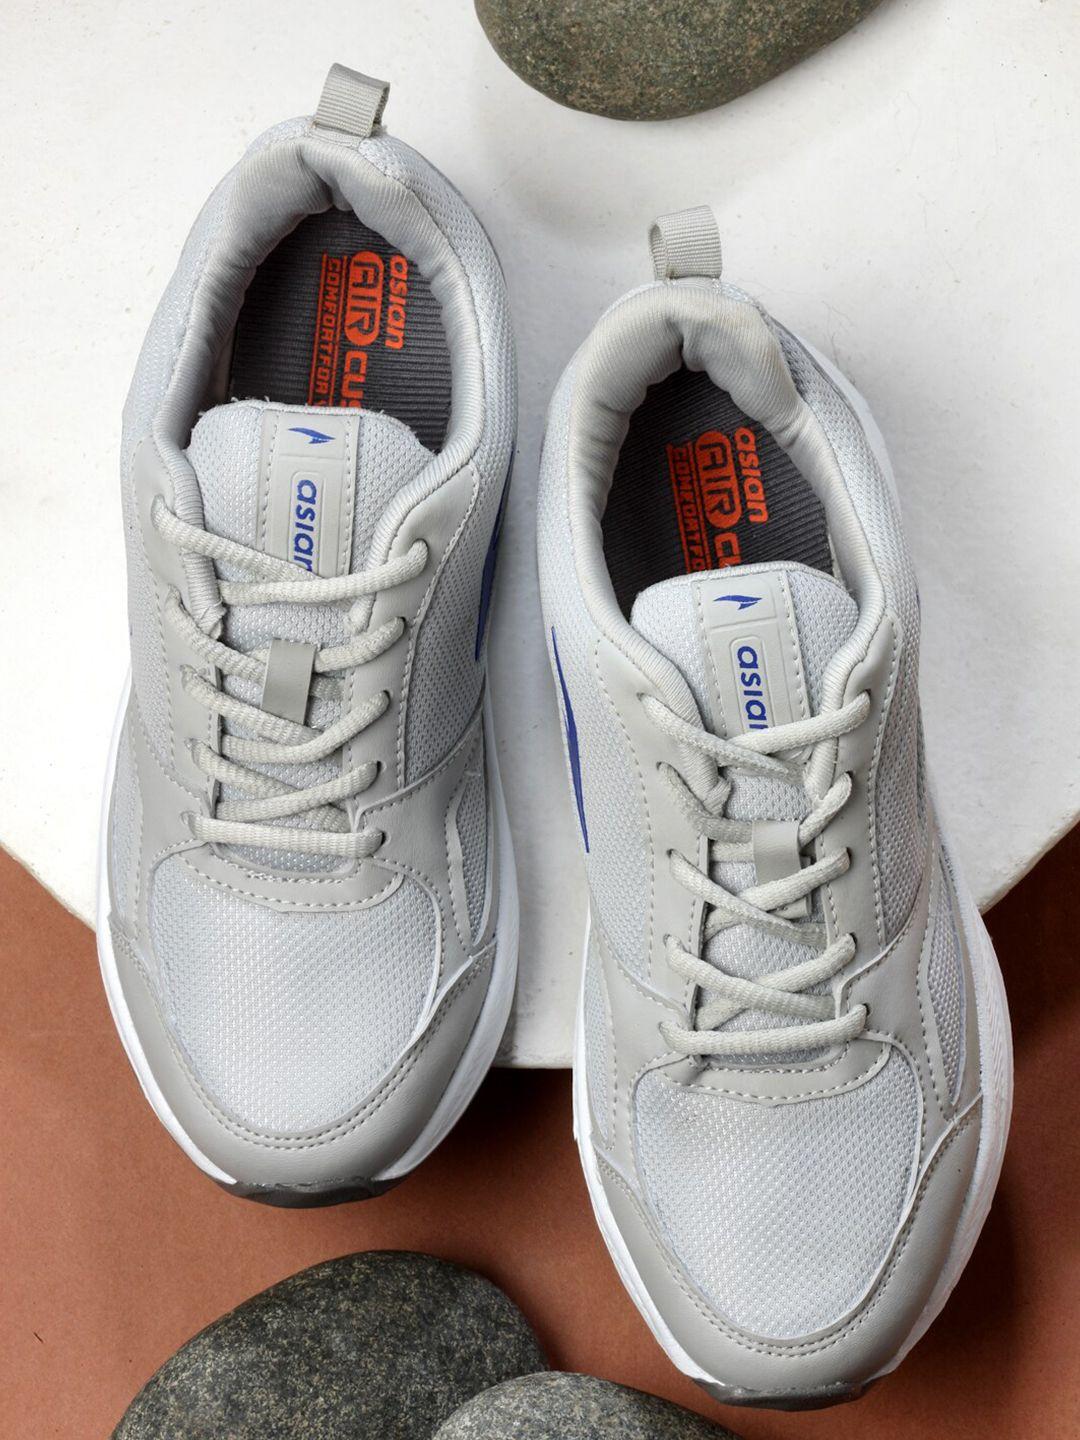 asian men grey mesh running non-marking sports shoes